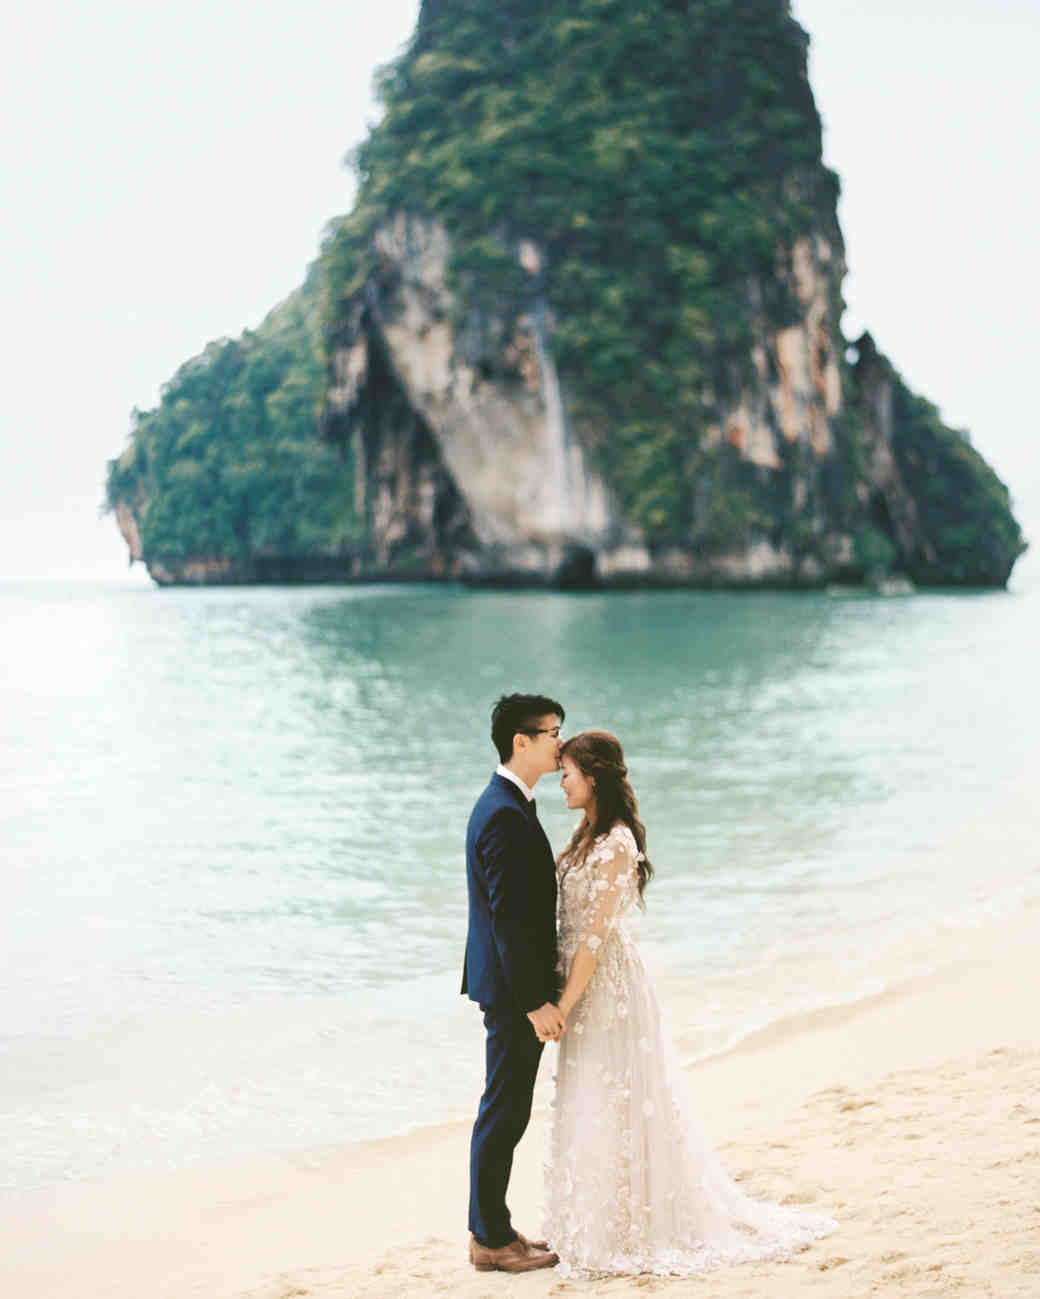 A Dreamy Seaside Wedding In Thailand Martha Stewart Weddings